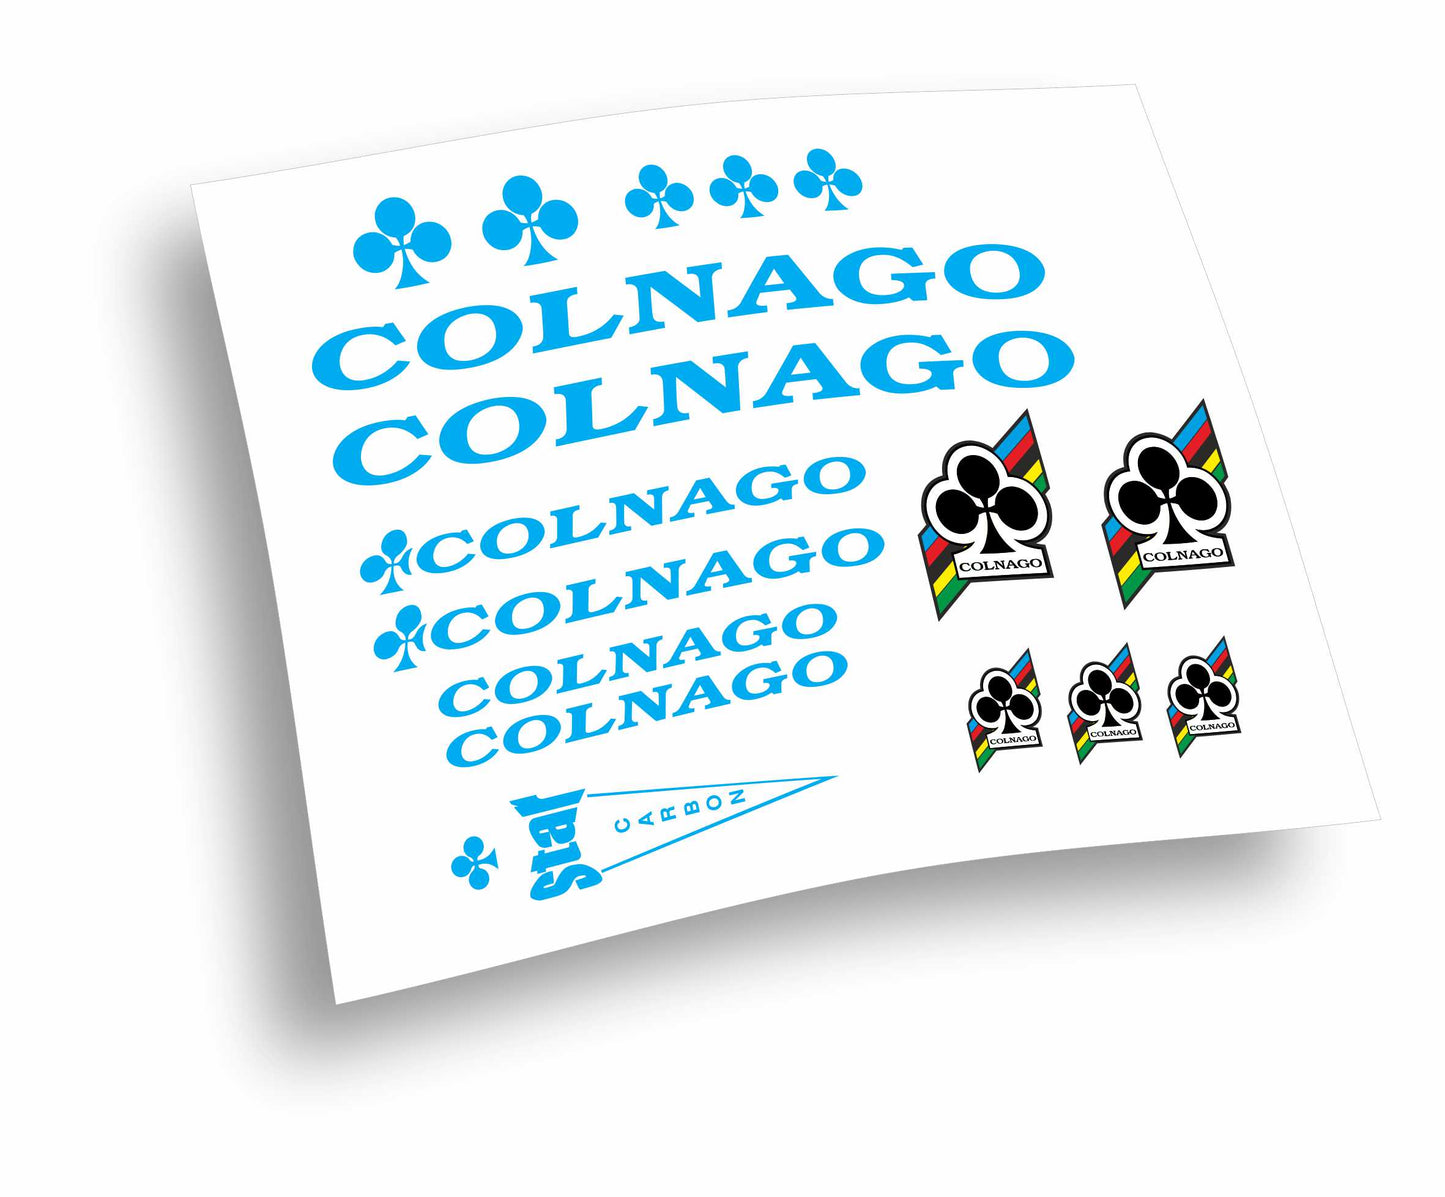 Kit adesivi Colnago colori a scelta anche fluo 16pz bicicletta mtb bdc